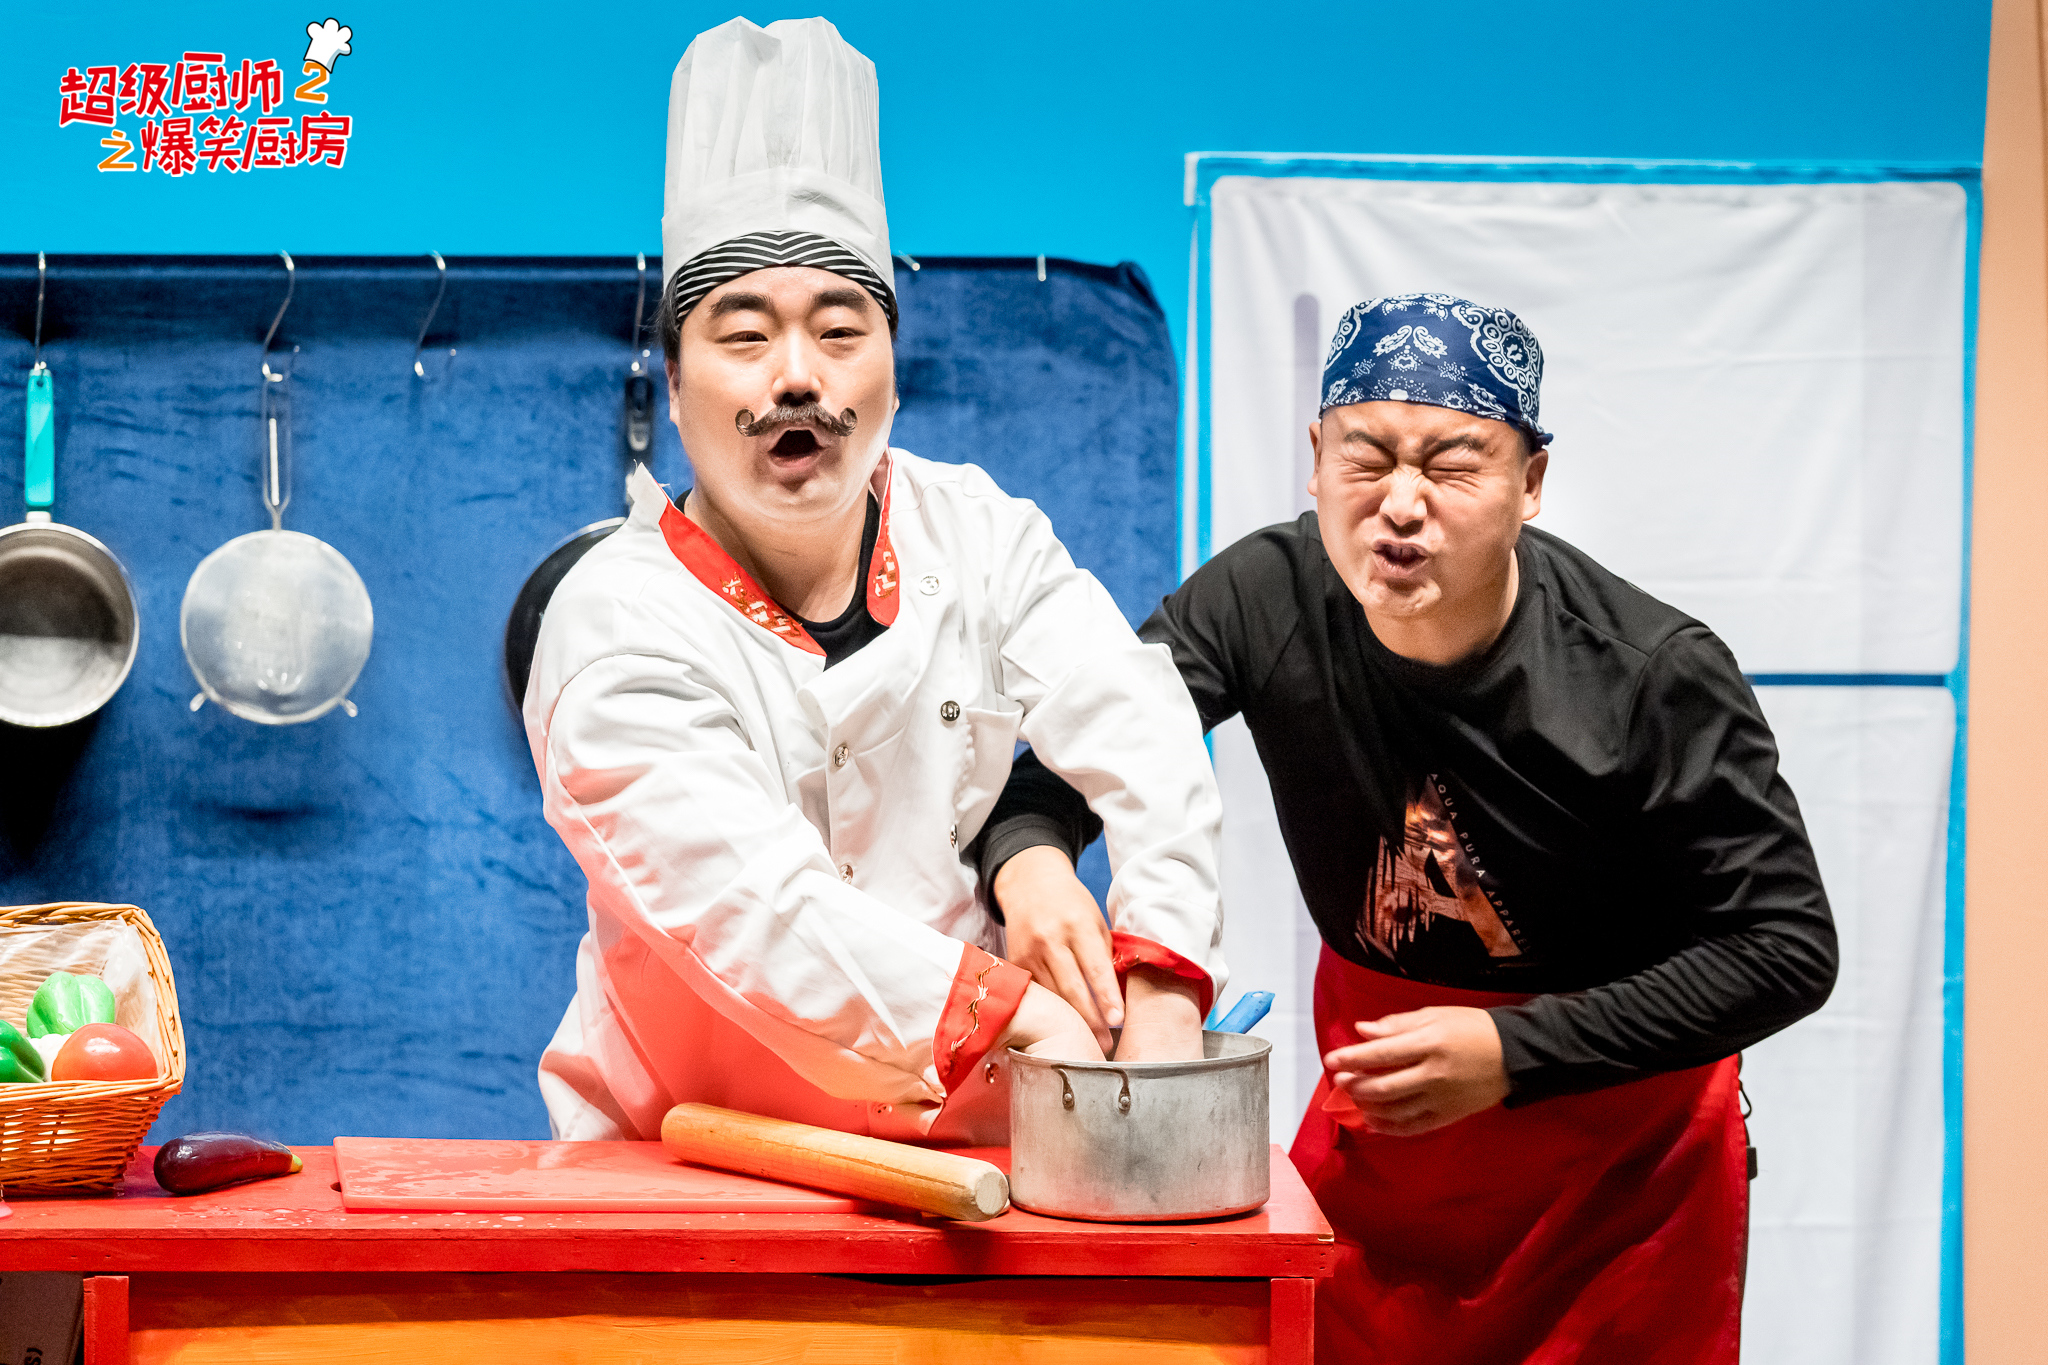 【广州站】中英联合制作爆笑儿童剧《超级厨师2之爆笑厨房》